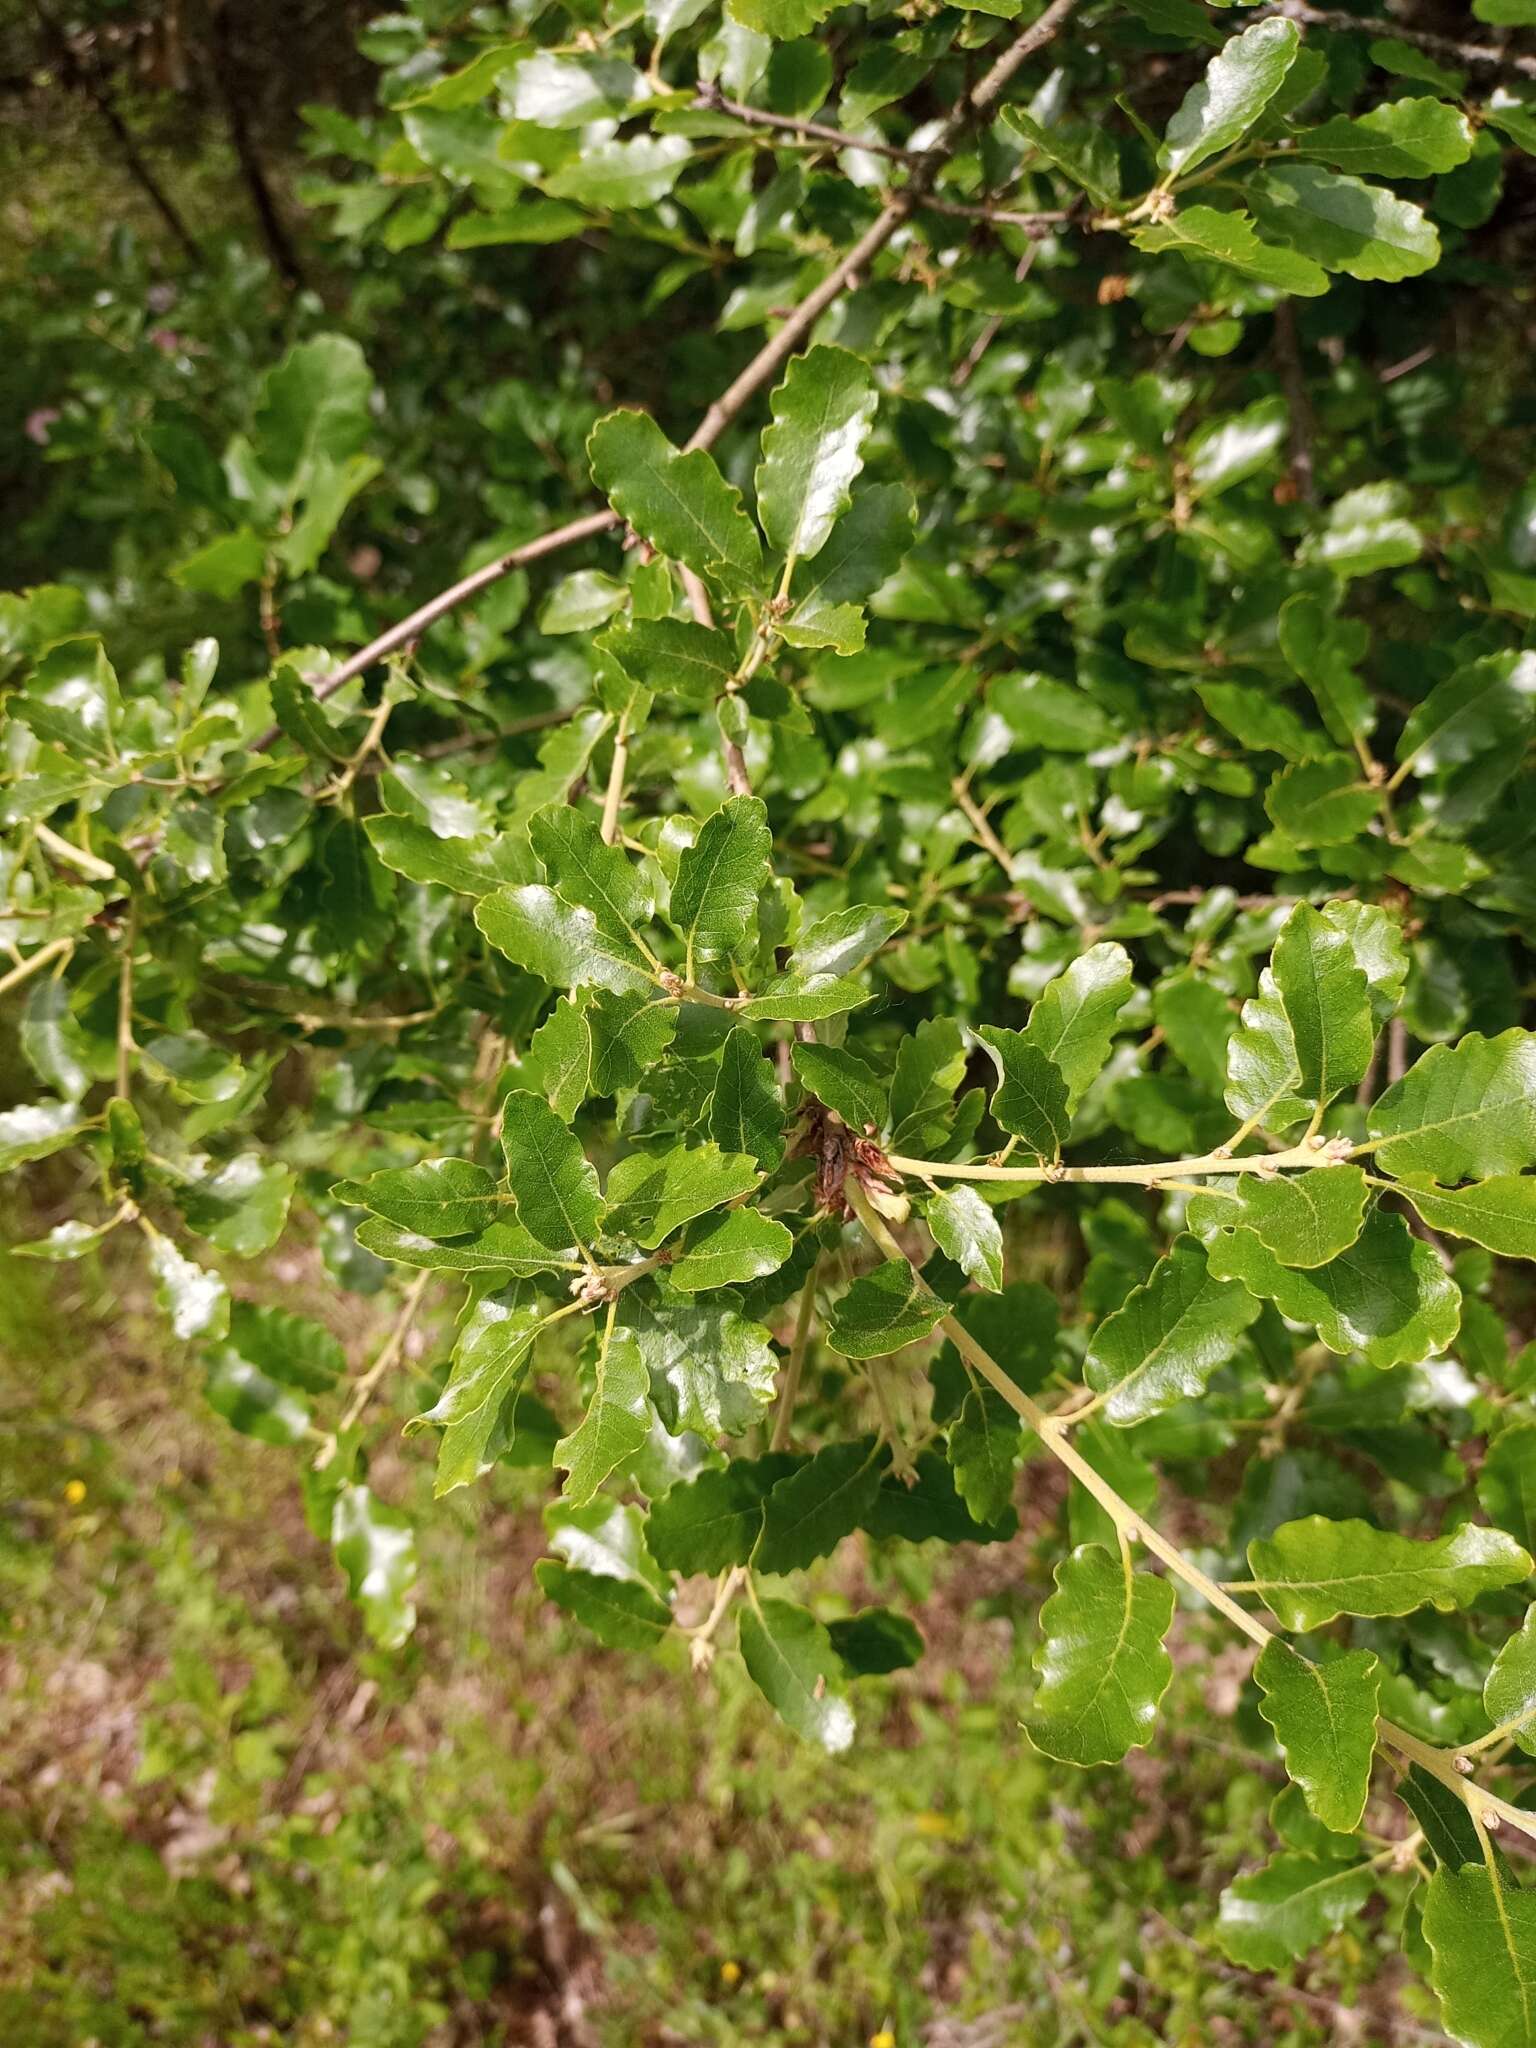 Image of Quercus pubescens subsp. subpyrenaica (Villar) Rivas Mart. & C. Saenz